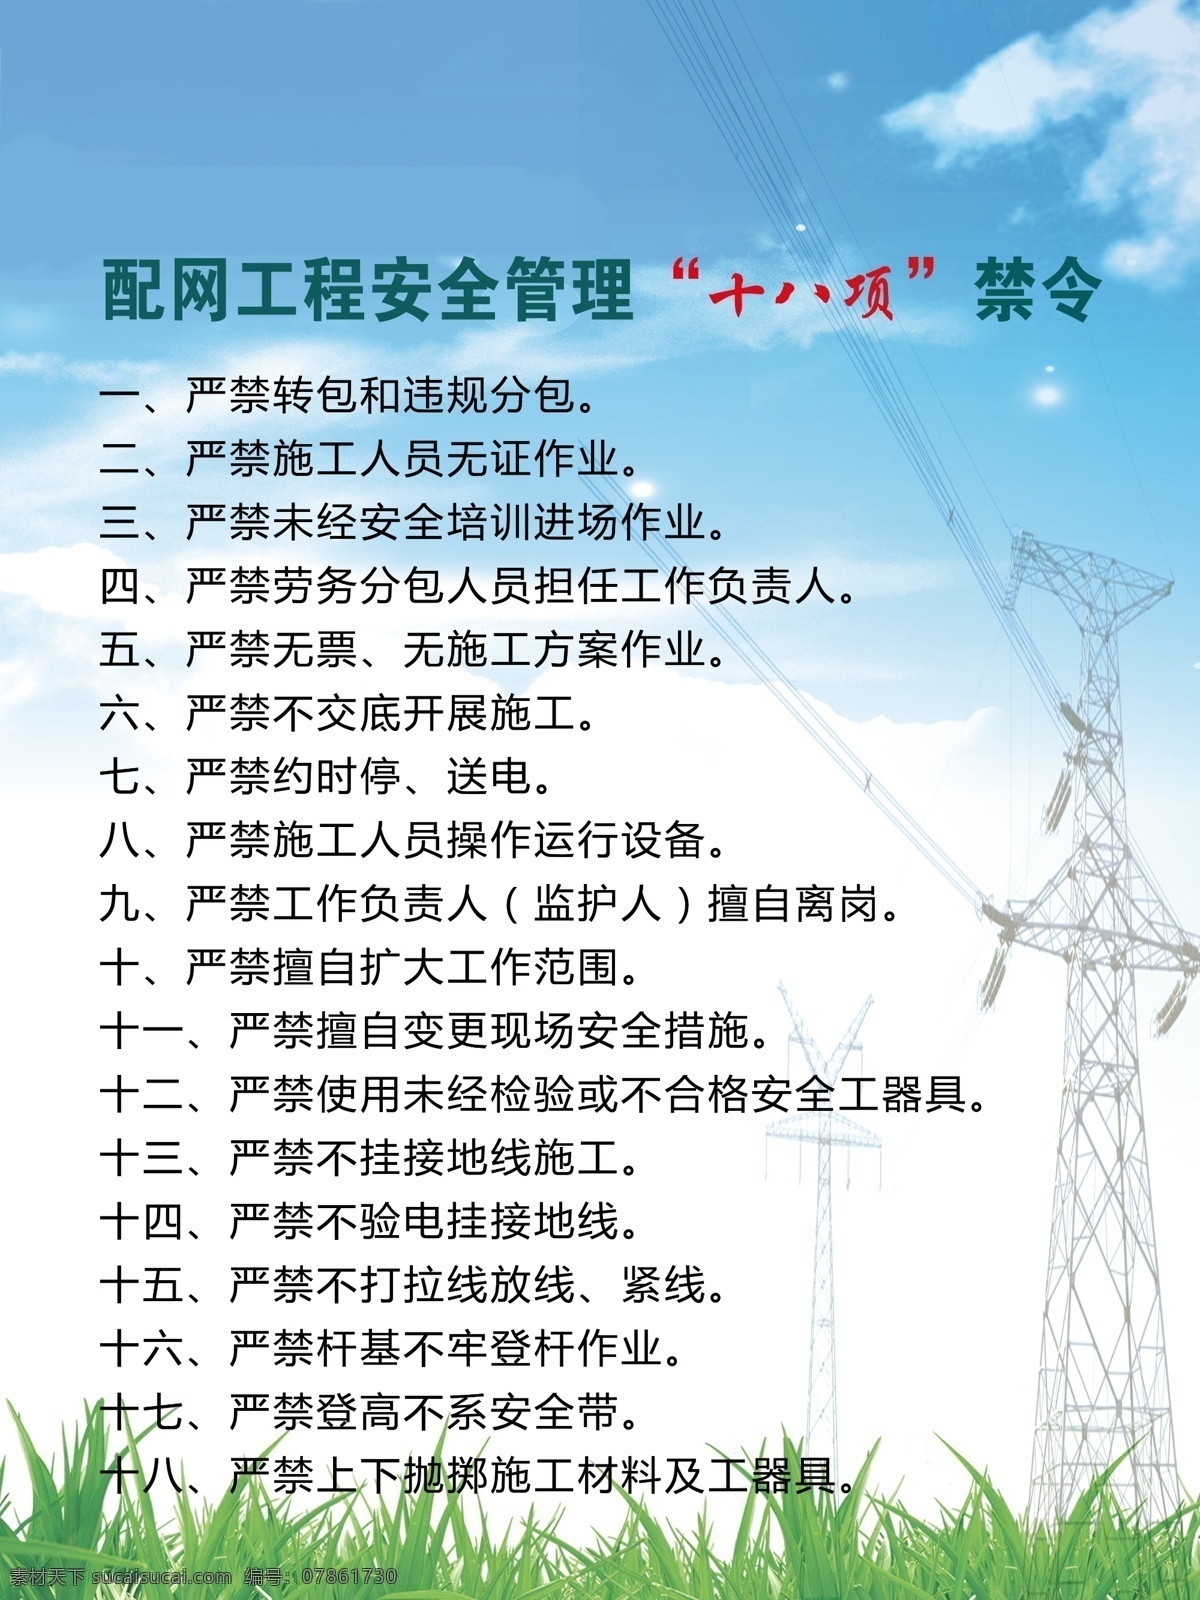 十八项 禁令 电网 电力 施工 配网工程